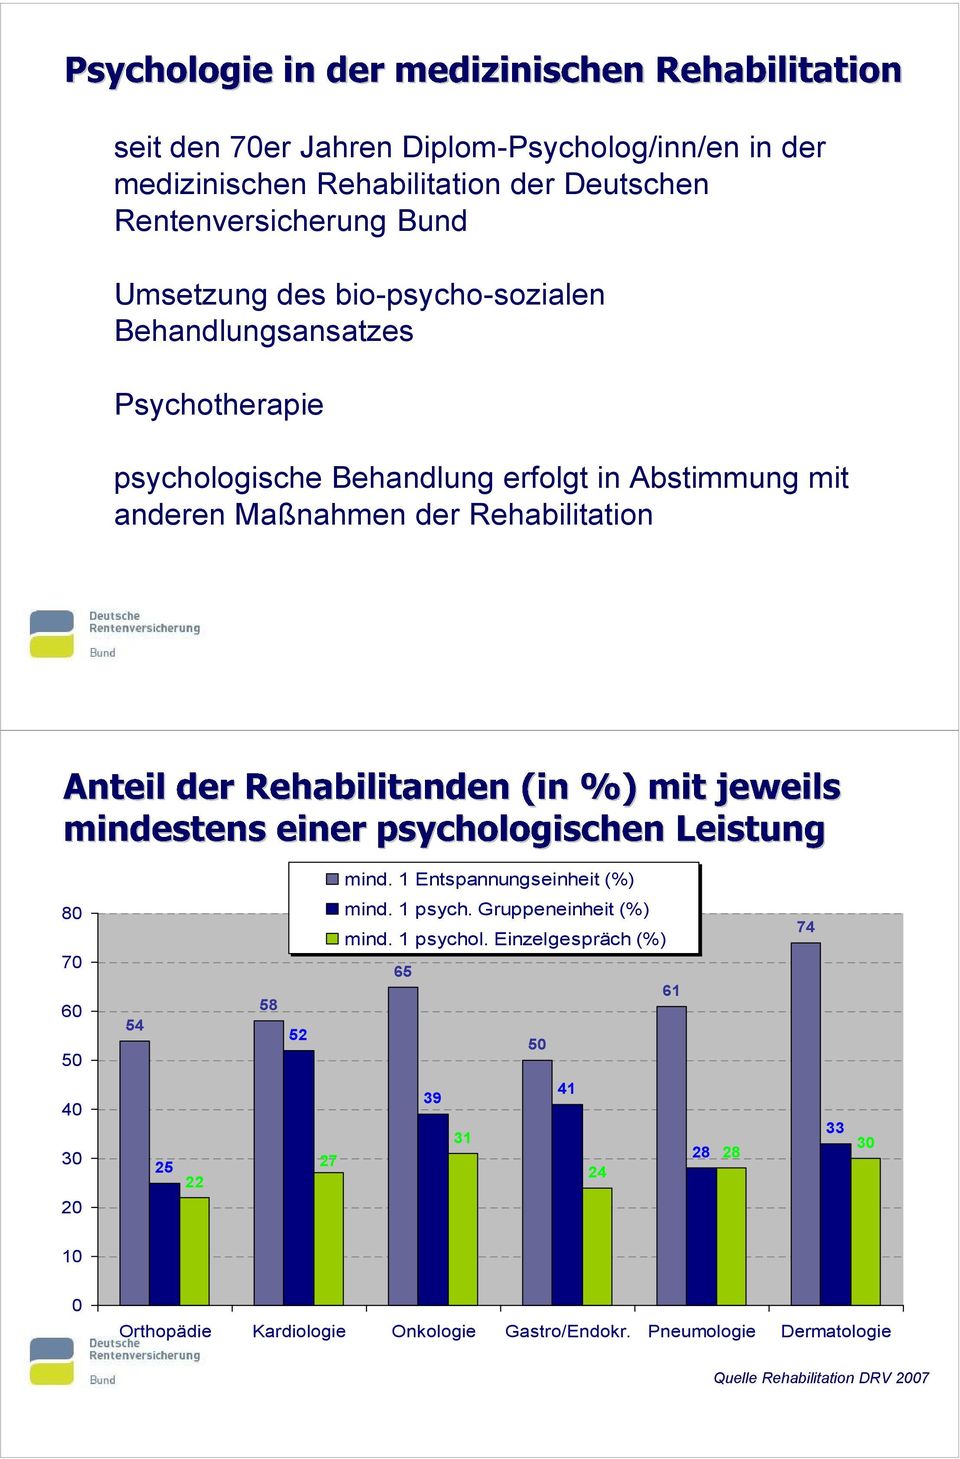 Rehabilitation mind. 1 Entspannungseinheit (%) 80 70 60 50 54 58 52 mind. 1 psych. Gruppeneinheit (%) mind. 1 psychol.